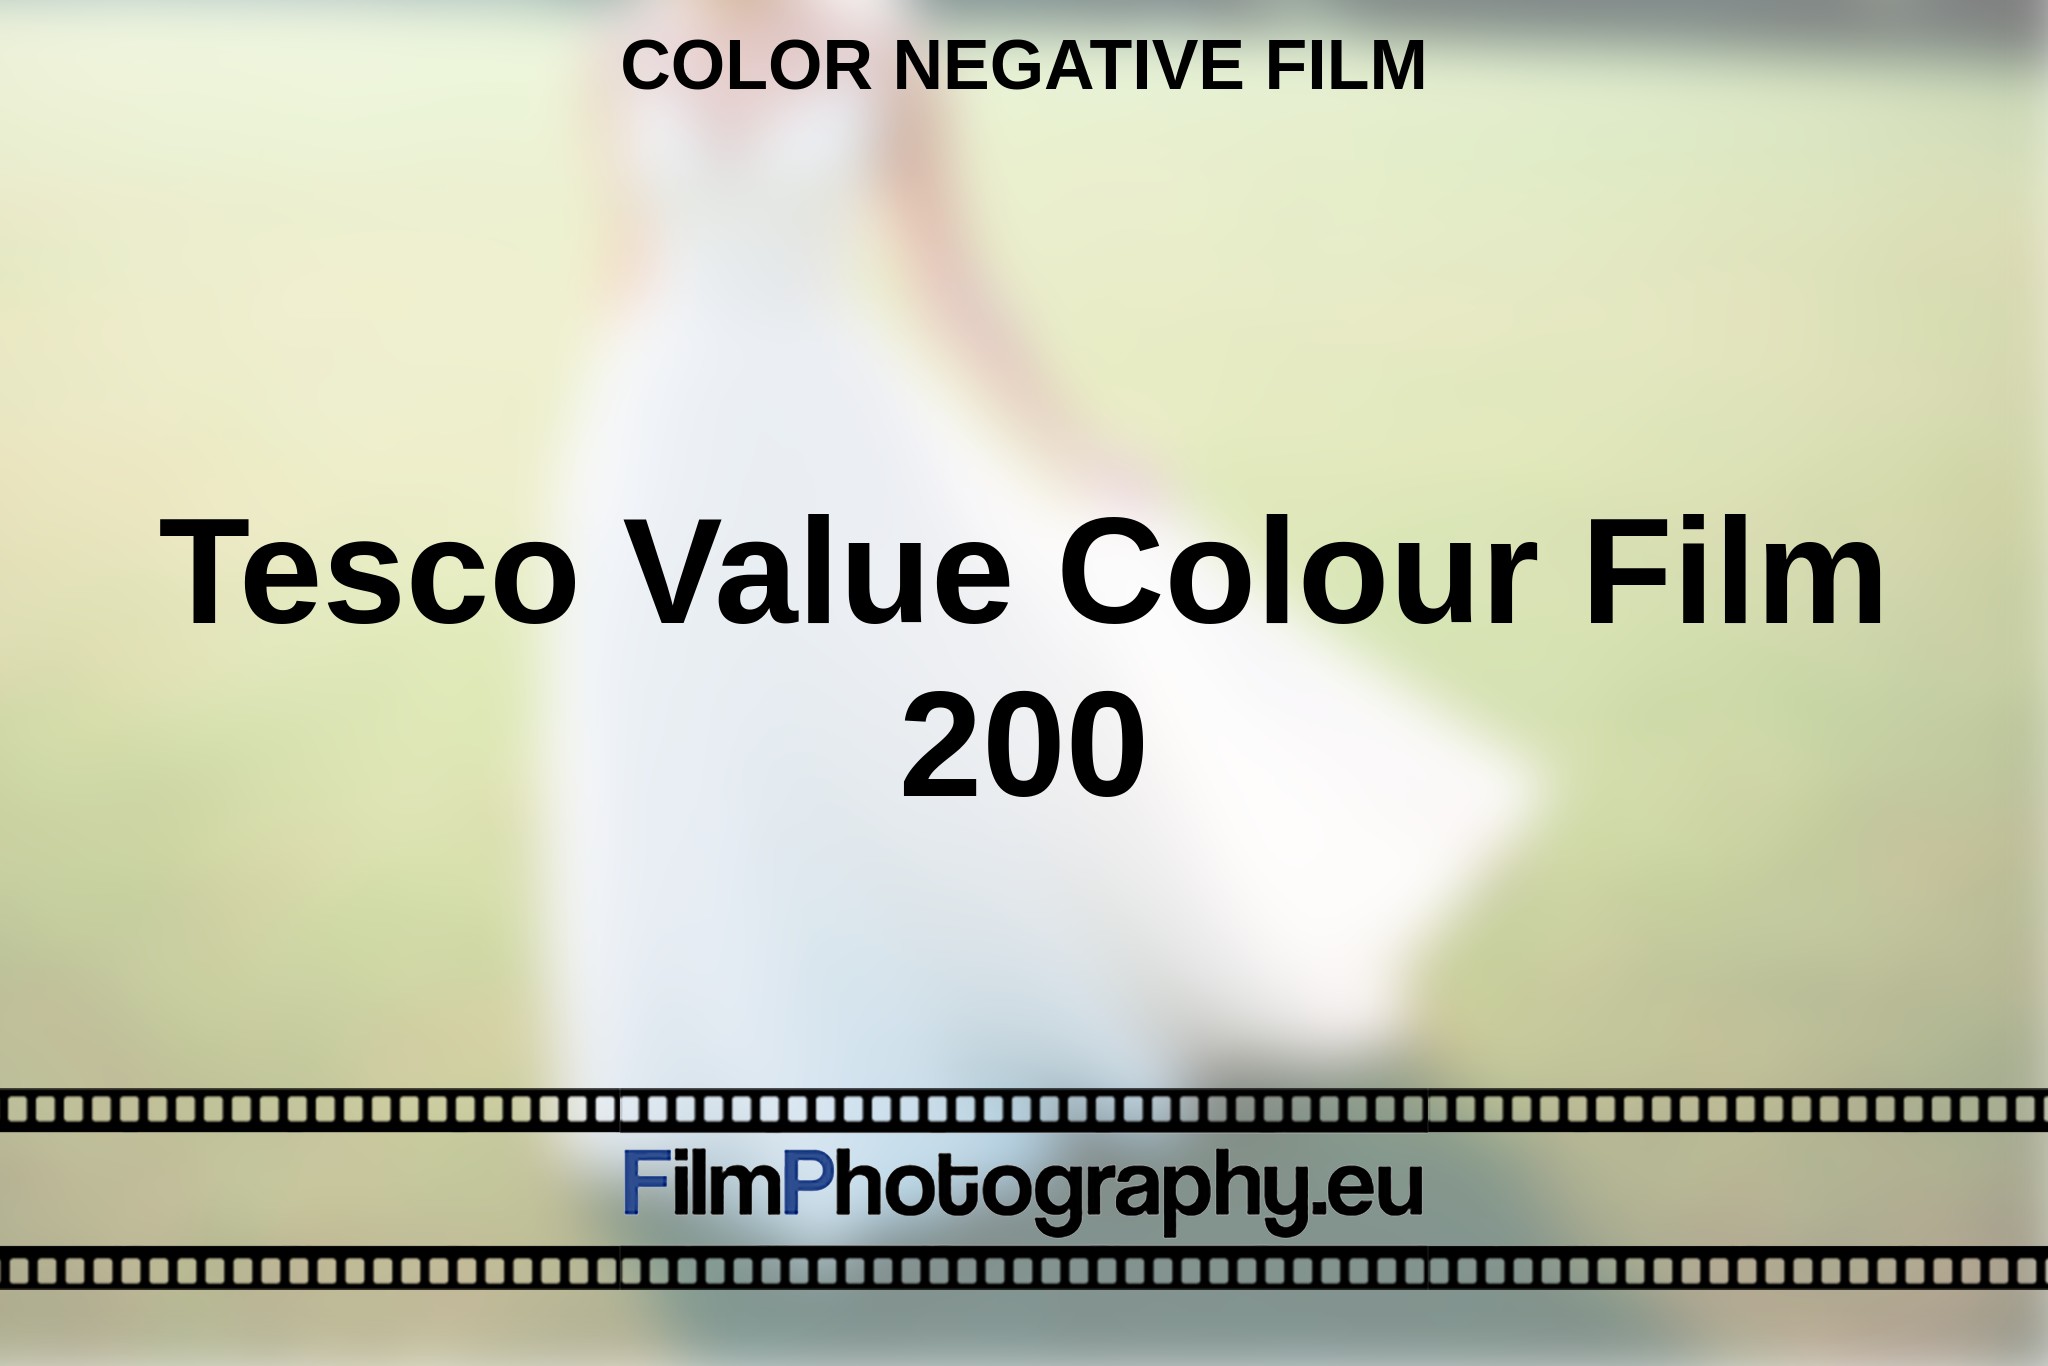 tesco-value-colour-film-200-color-negative-film-en-bnv.jpg